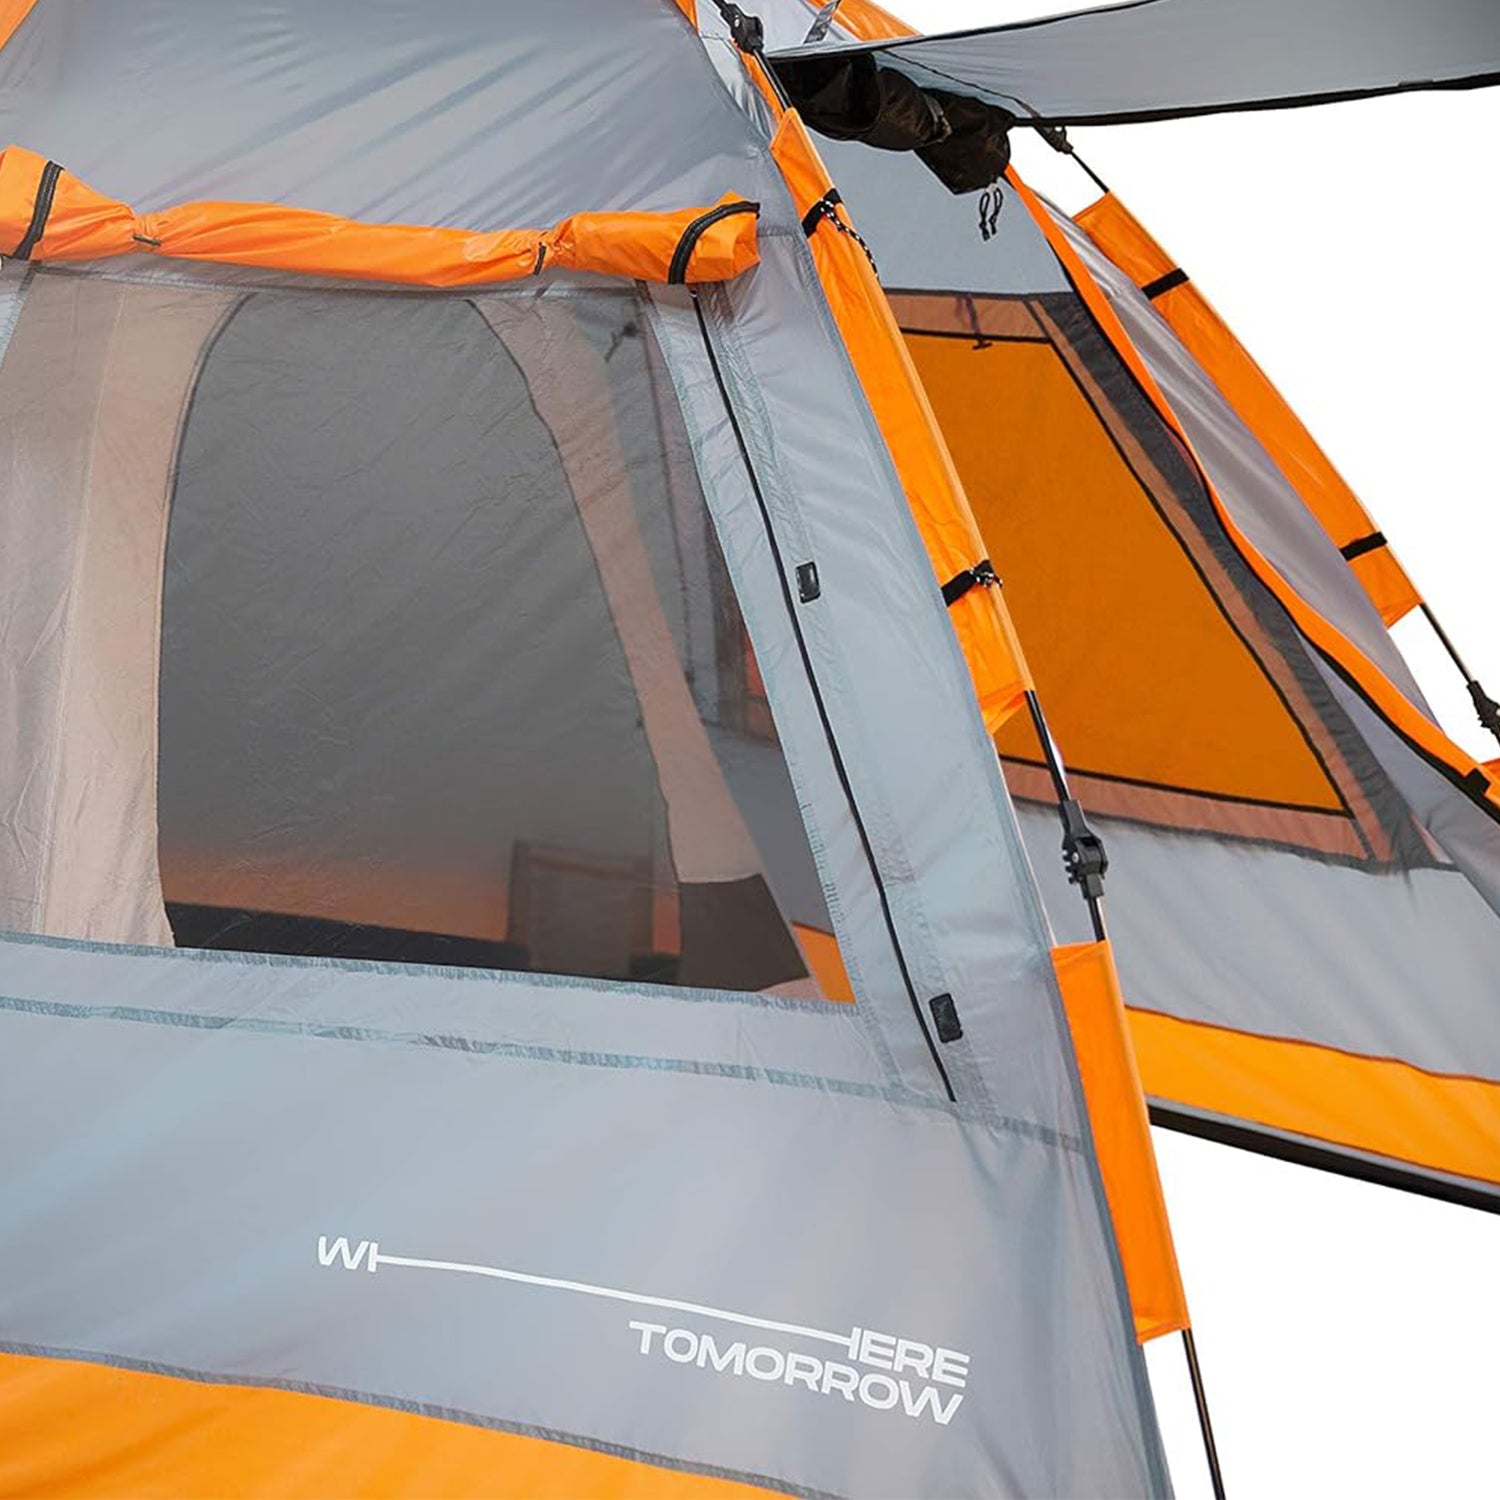 Familienzelt Pop Up Wurfzelt - 4-Personen - Zelt mit Sonnendach - 340x280x185 cm -  Orange-Grau